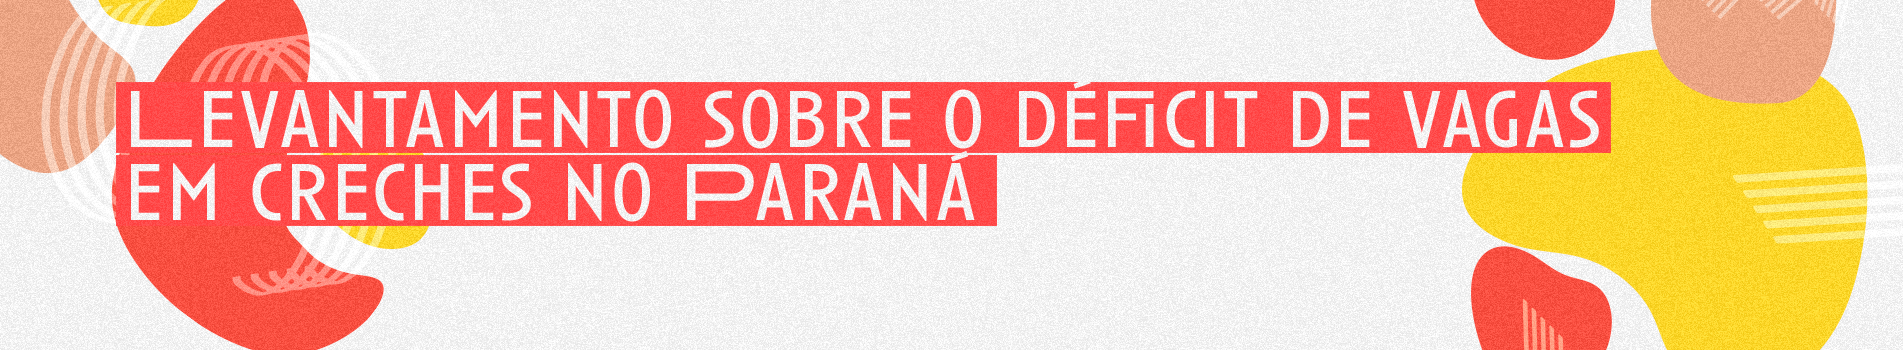 Imagem com formas orgânicas nas cores amarelo, vermelho e bêge. De form,a centralizada, o título "Levantamento sobre o déficit de vagas em creches no Paraná"